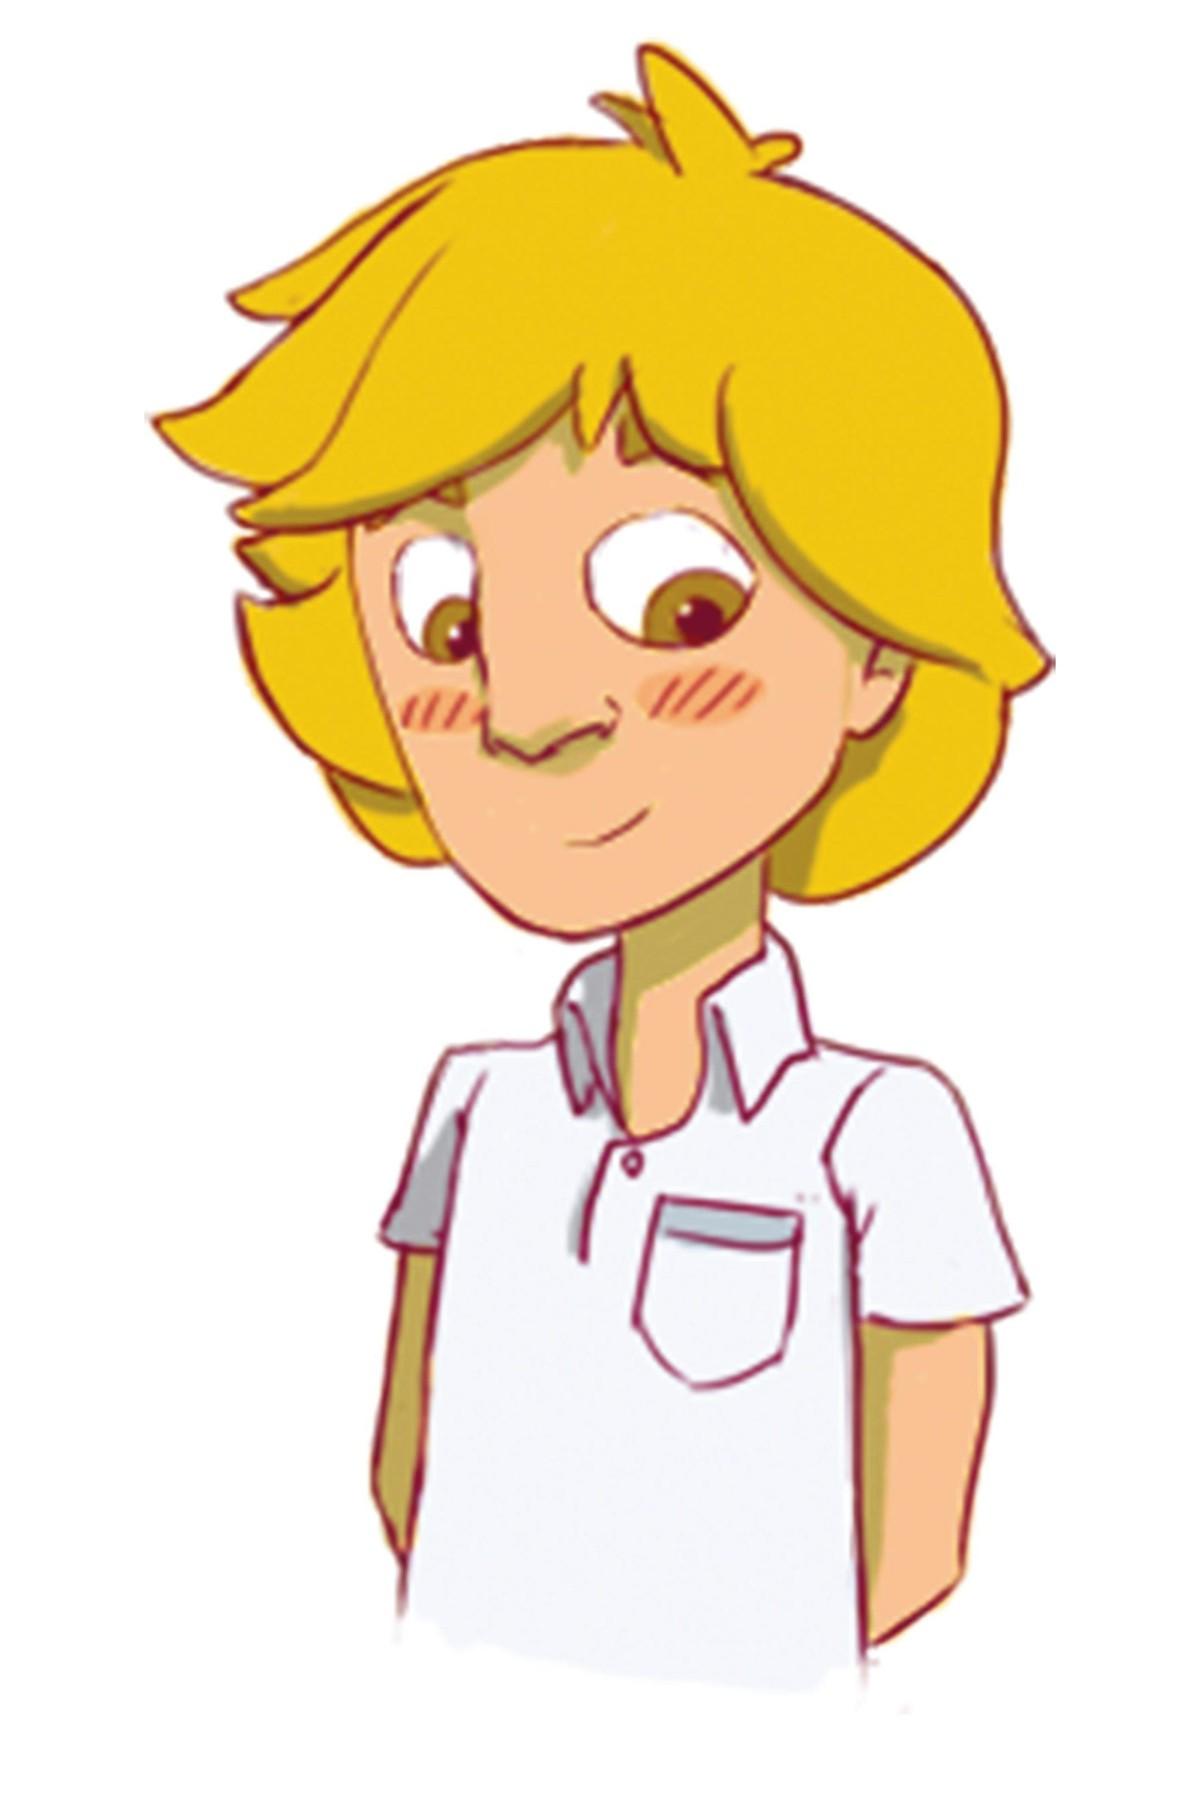 A shy blond boy